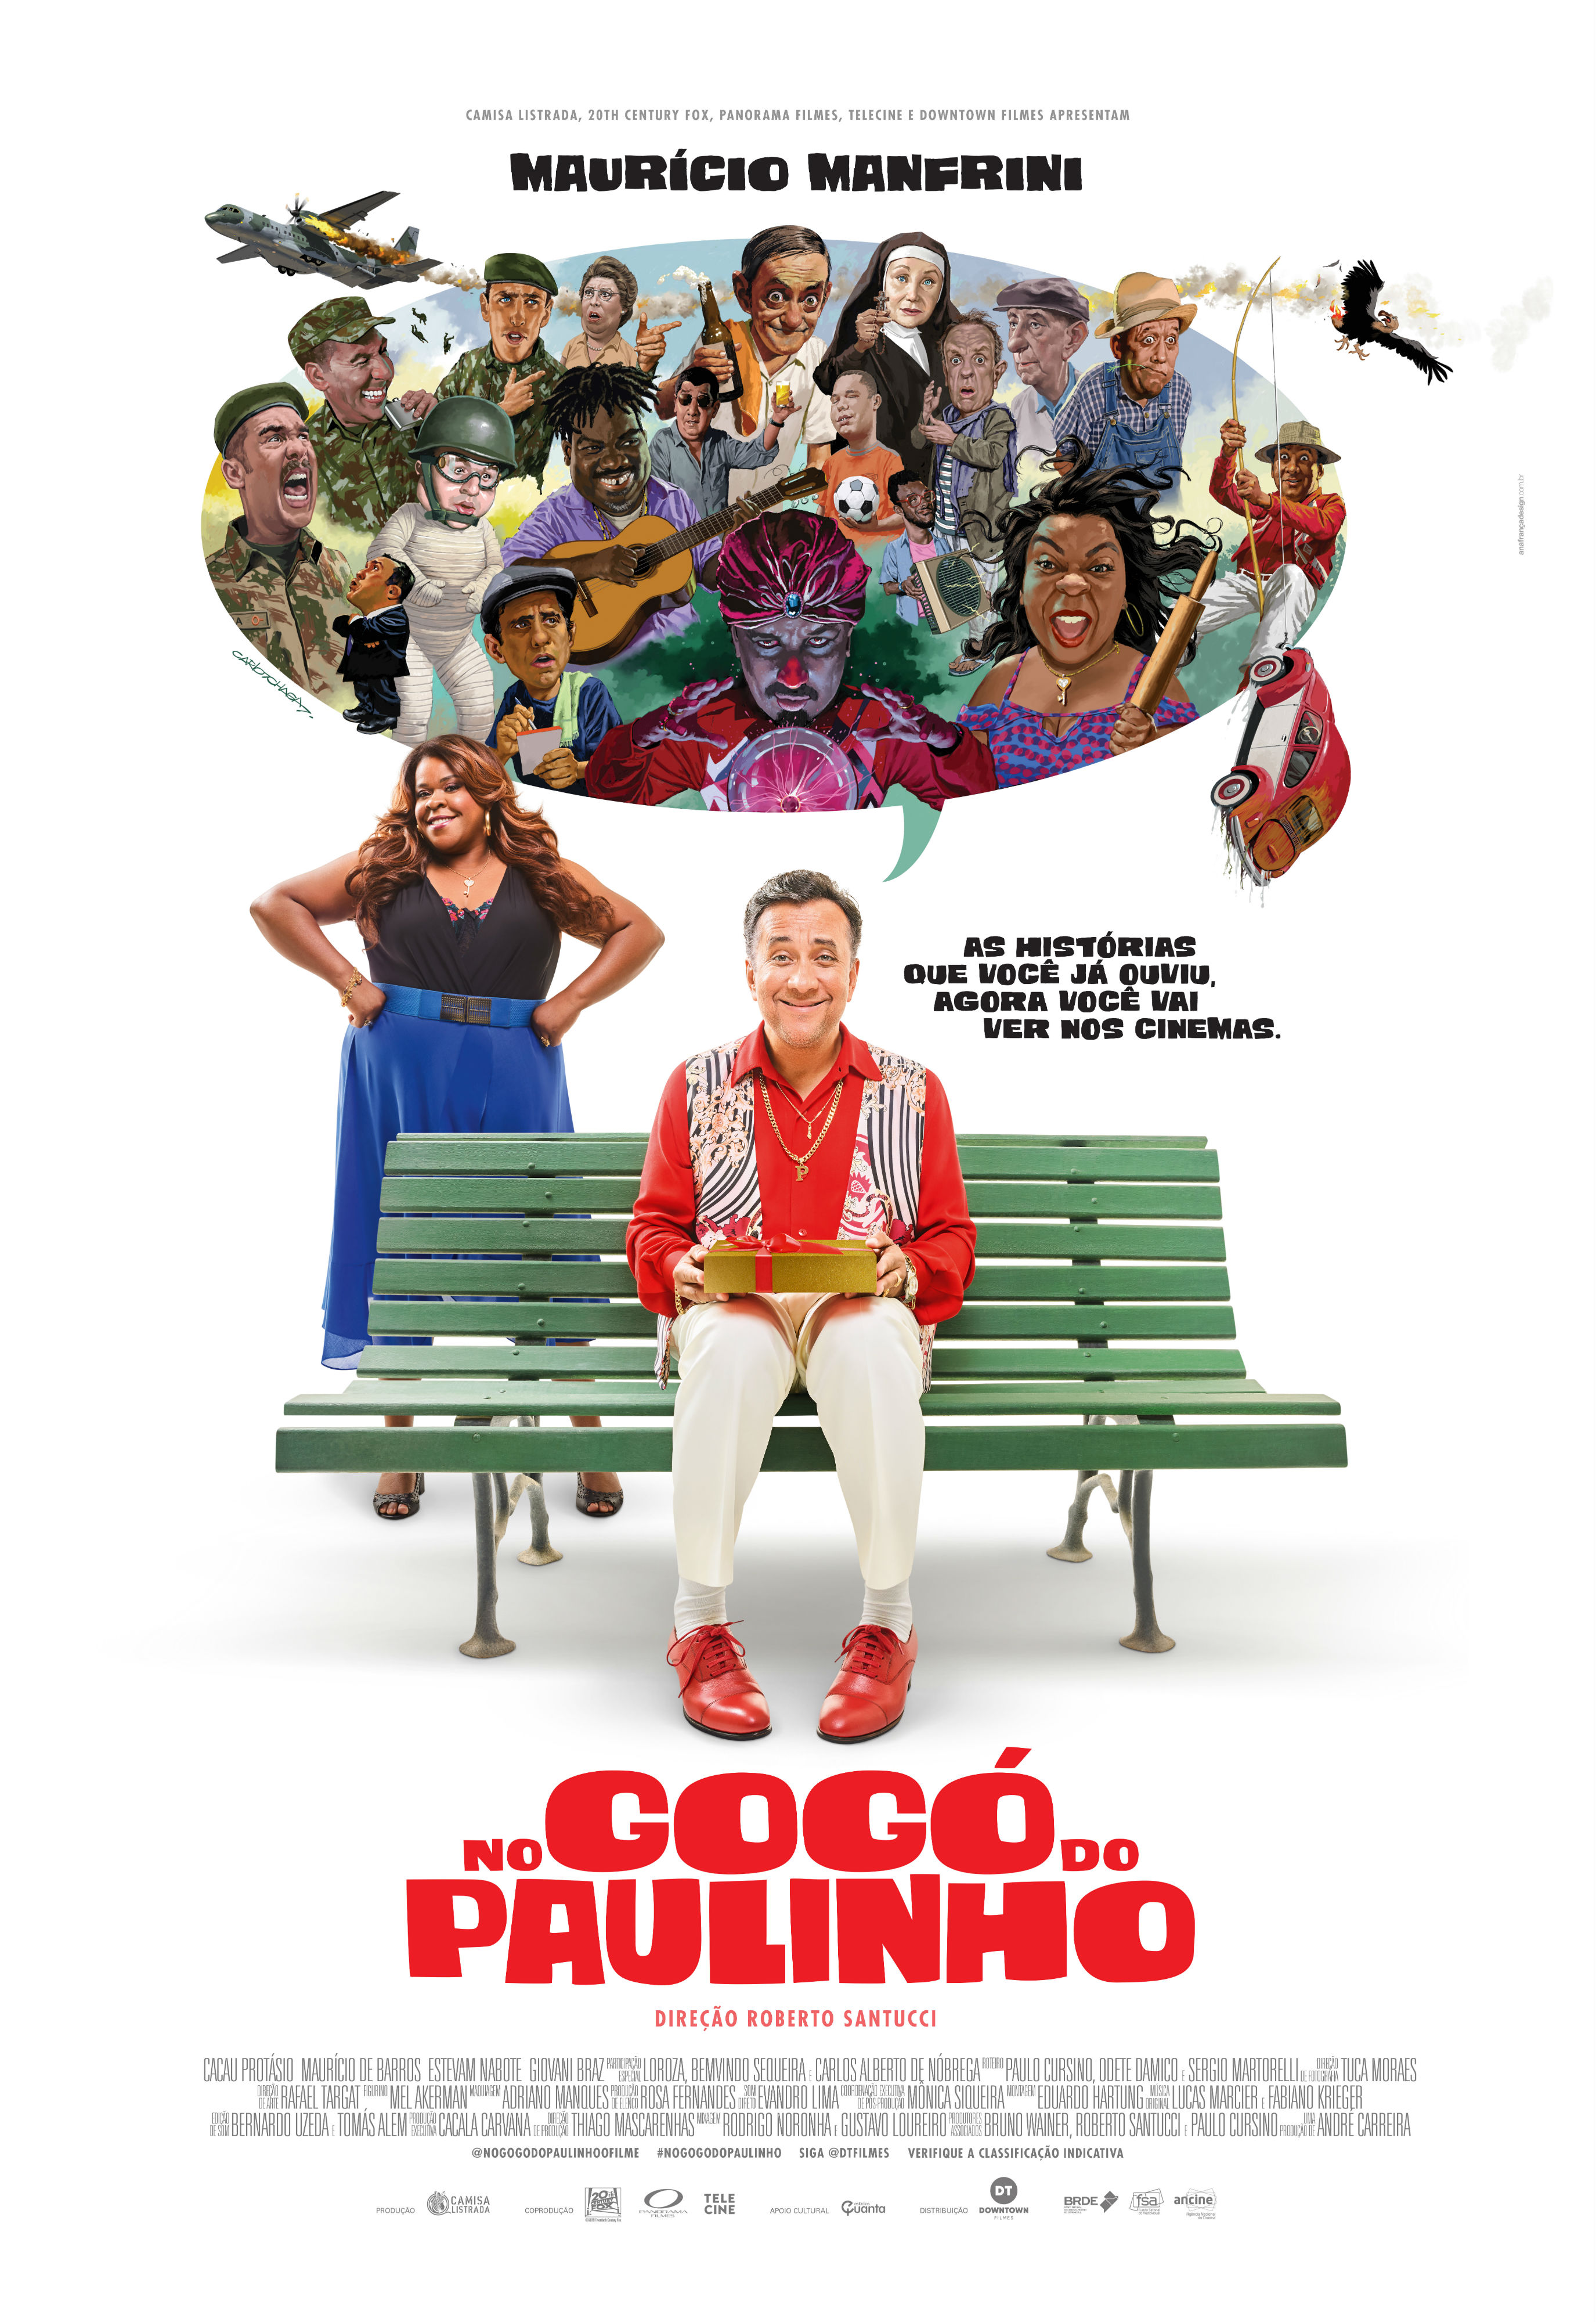 No Gogó do Paulinho (2020) постер